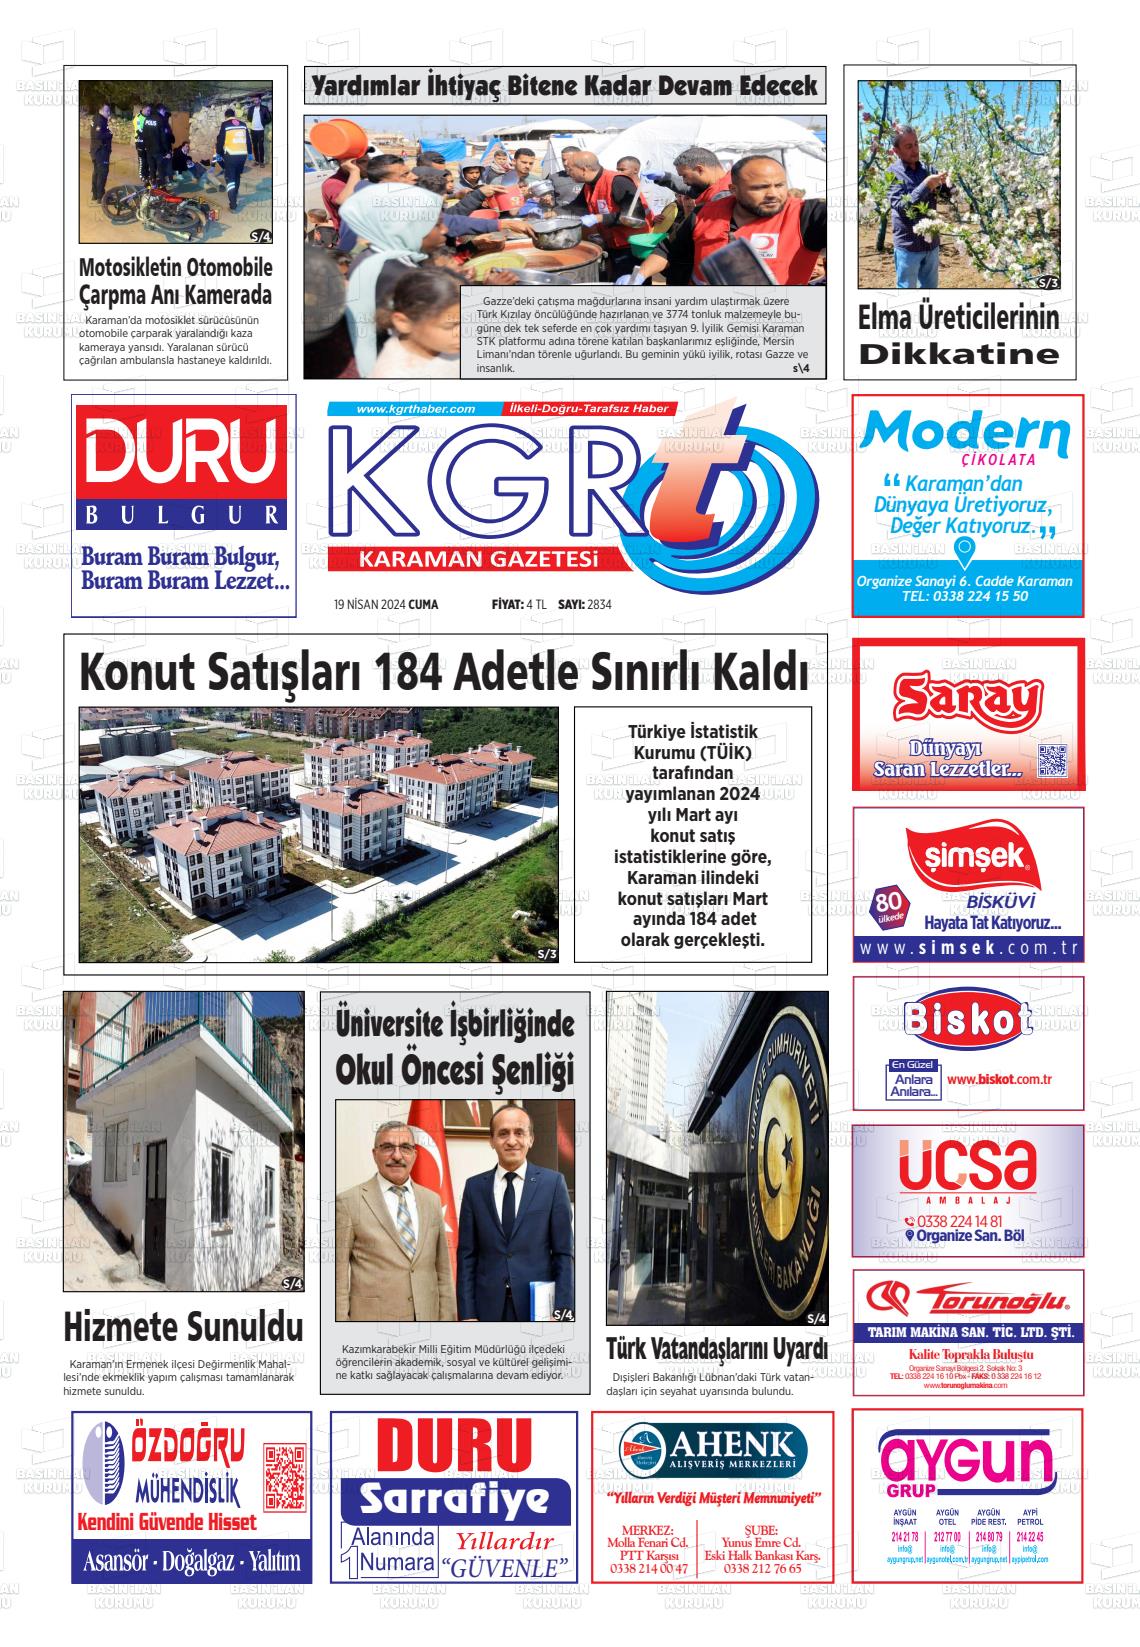 19 Nisan 2024 Kgrt Karaman Gazete Manşeti